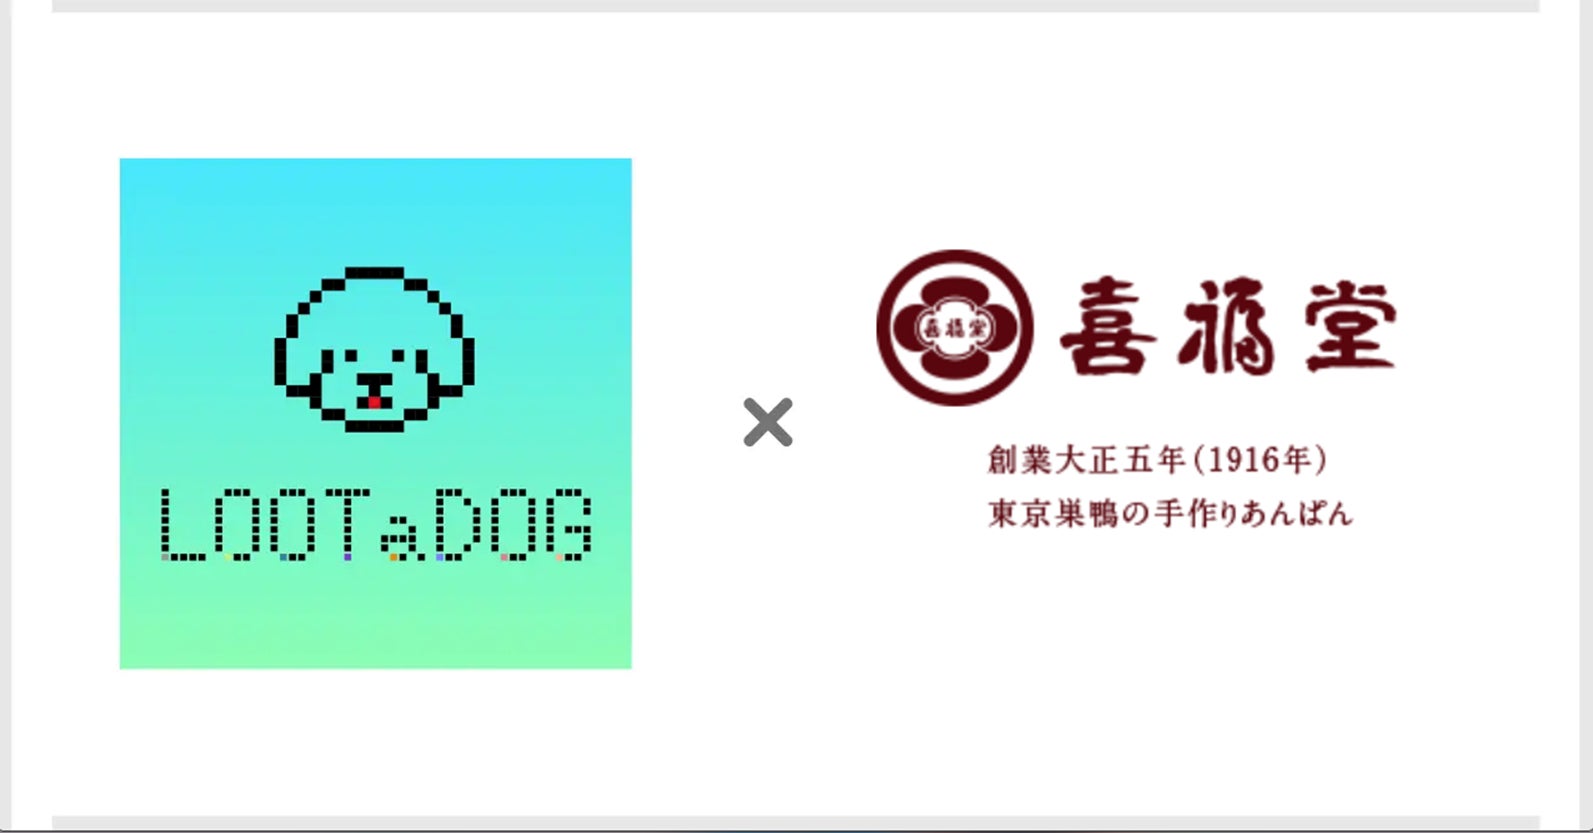 「Pブラックラグーン4」が無料ぱちんこ・パチスロアプリ「777Real」に登場！